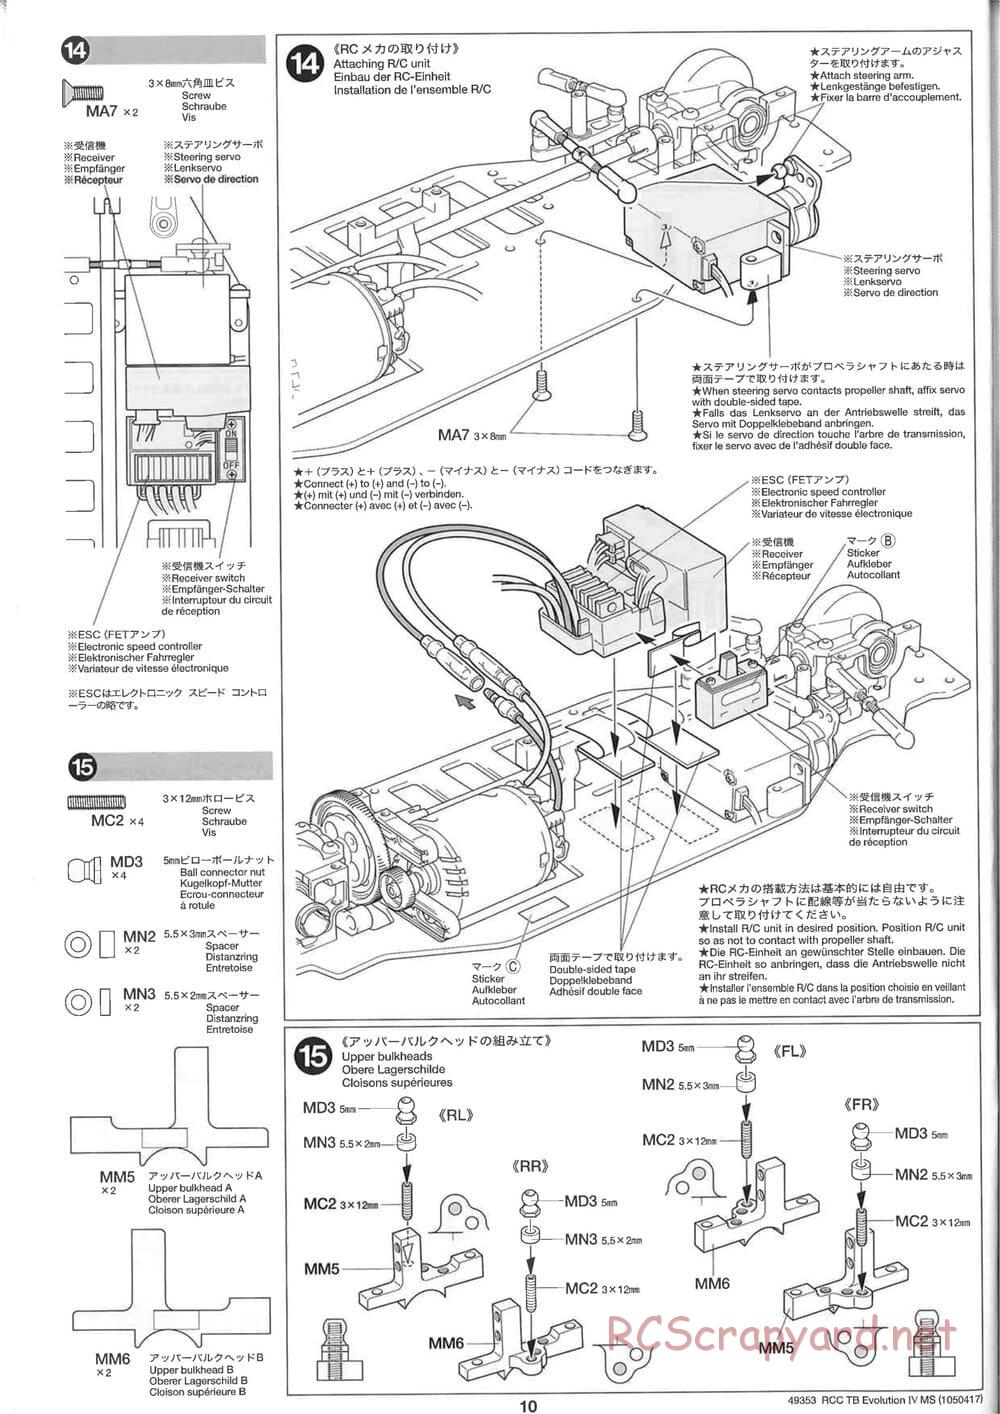 Tamiya - TB Evolution IV MS Chassis - Manual - Page 10